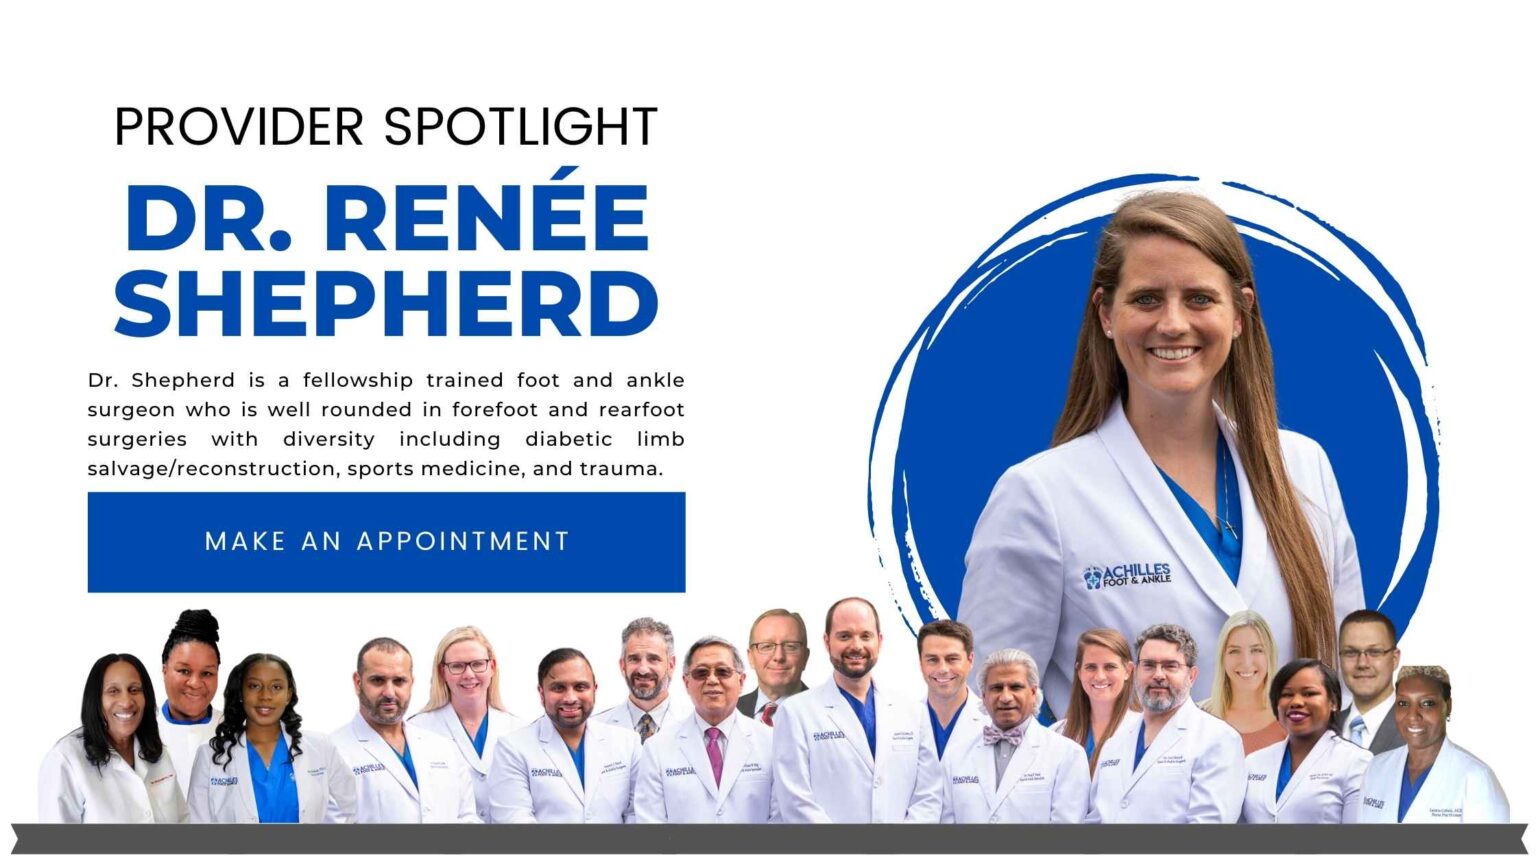 Dr. Renee Shepherd